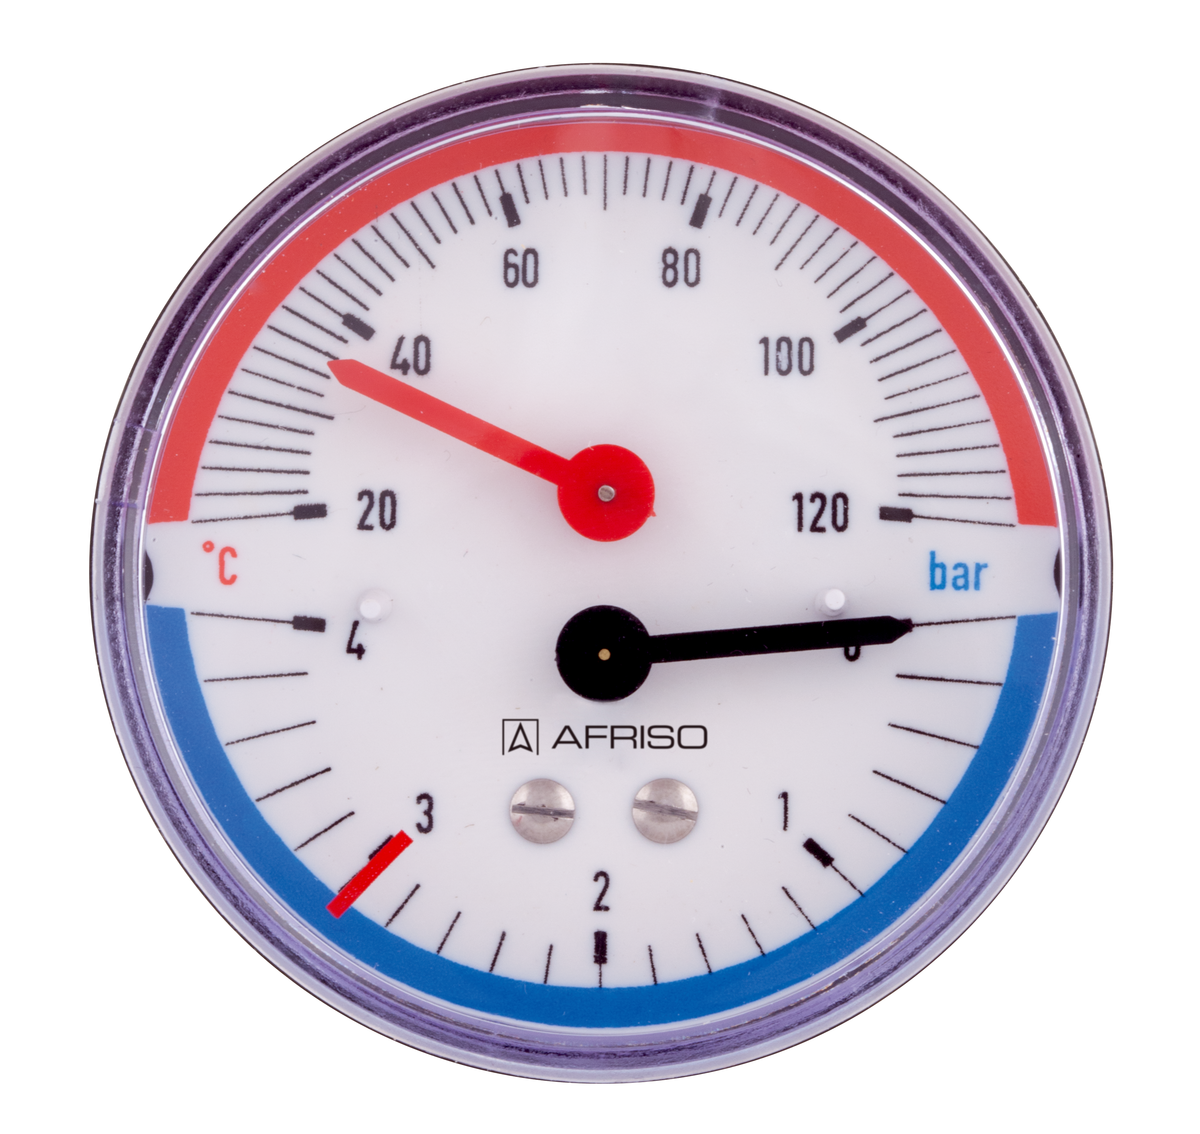 AFRISO Thermo-Manometer TM 80 20/120C 0/4bar G1/2B axial mit Ventil D111 VOR 16380 object_image_93443imagemain_de